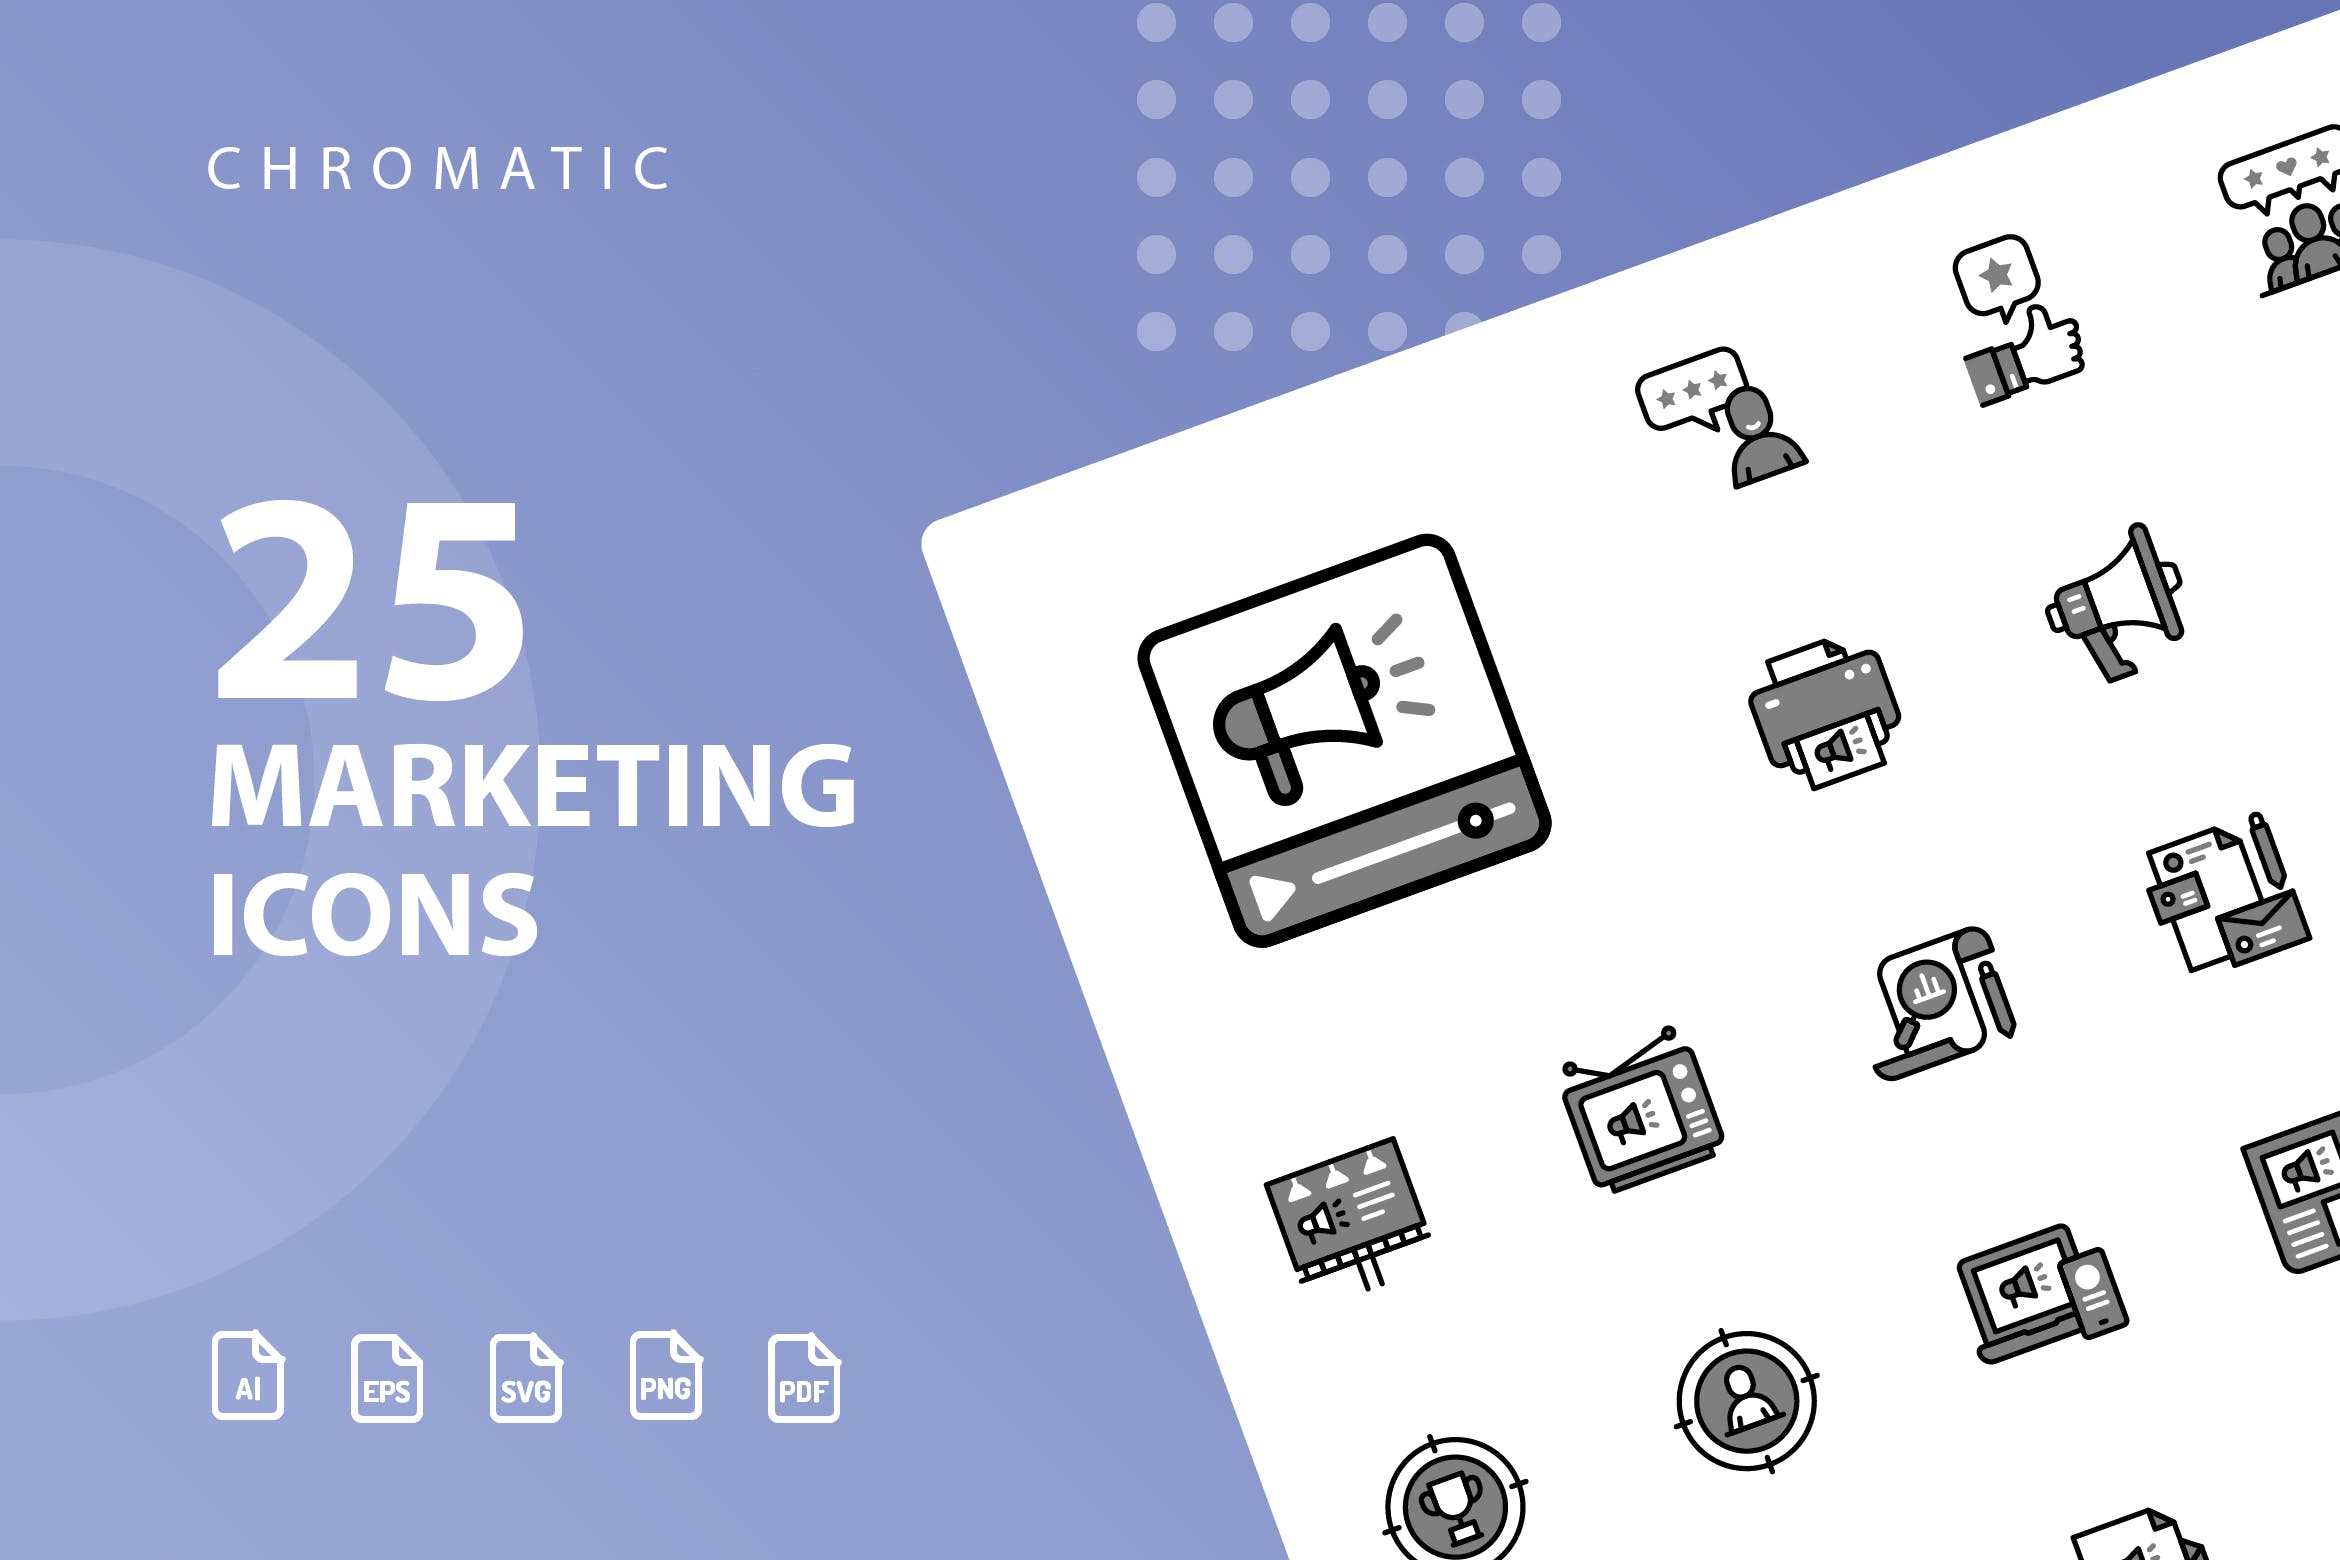 25枚市场营销Chromatic风格矢量素材库精选图标 Marketing Chromatic Icons插图